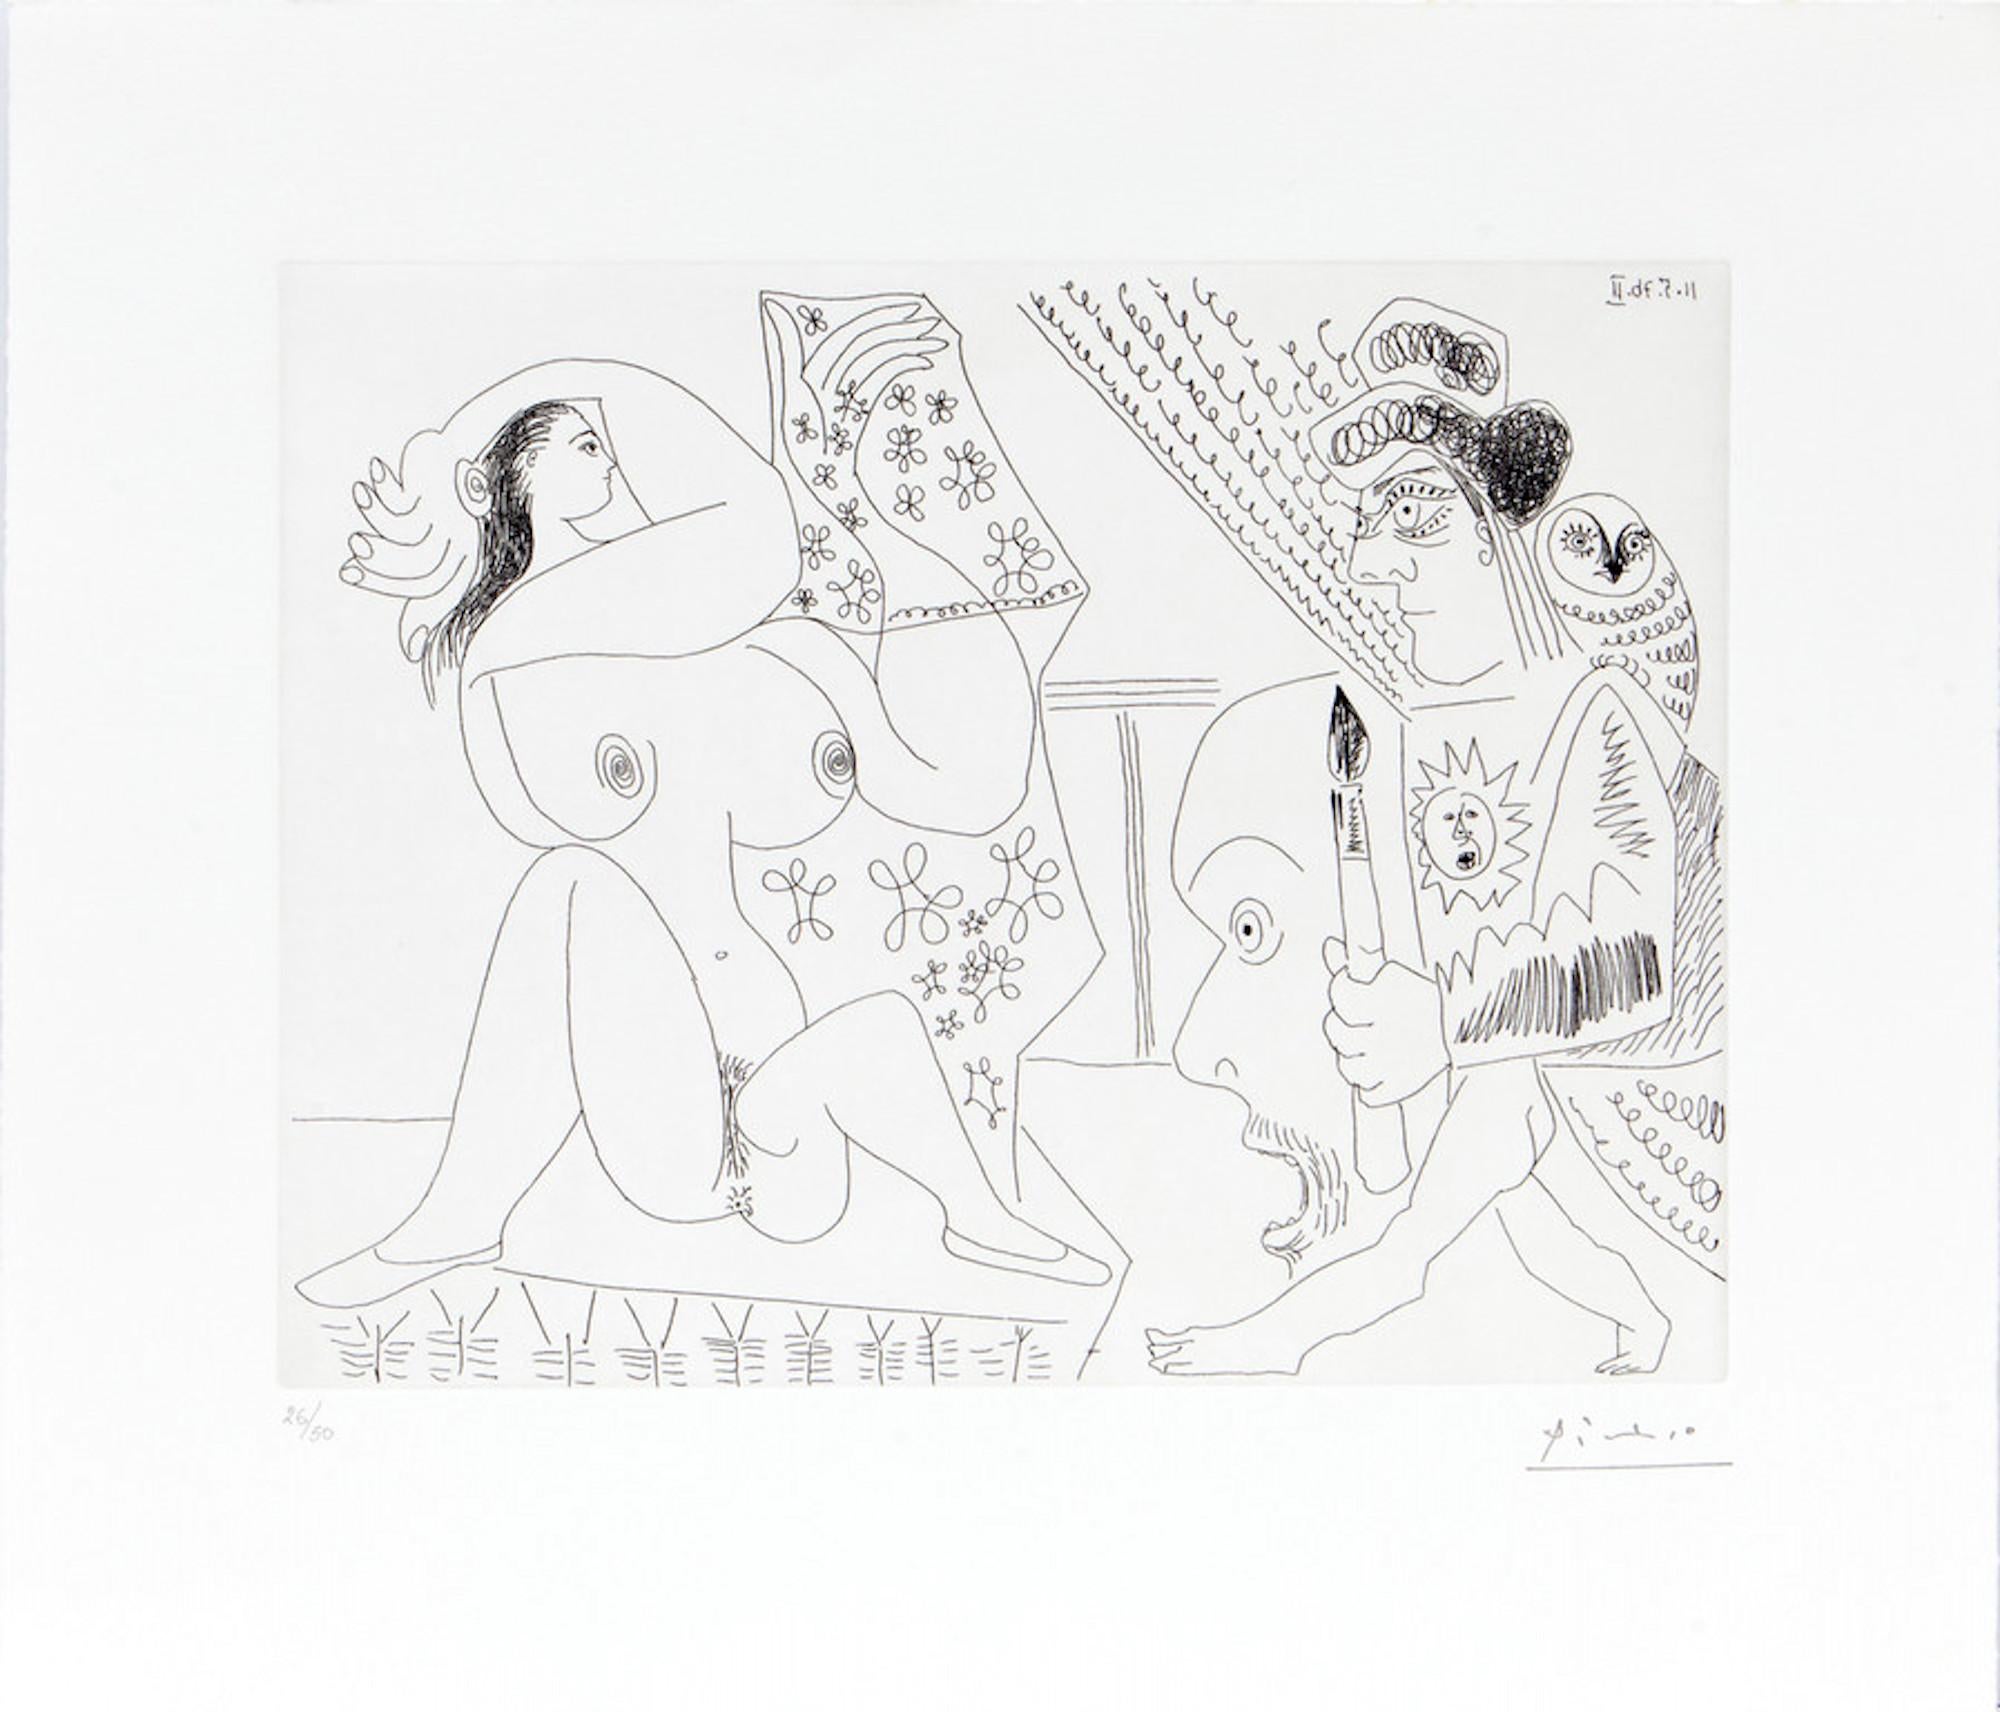 Pablo Picasso Figurative Print - 11.5.70 (11 Mai 1970) - Original Etching by P. Picasso - 1970